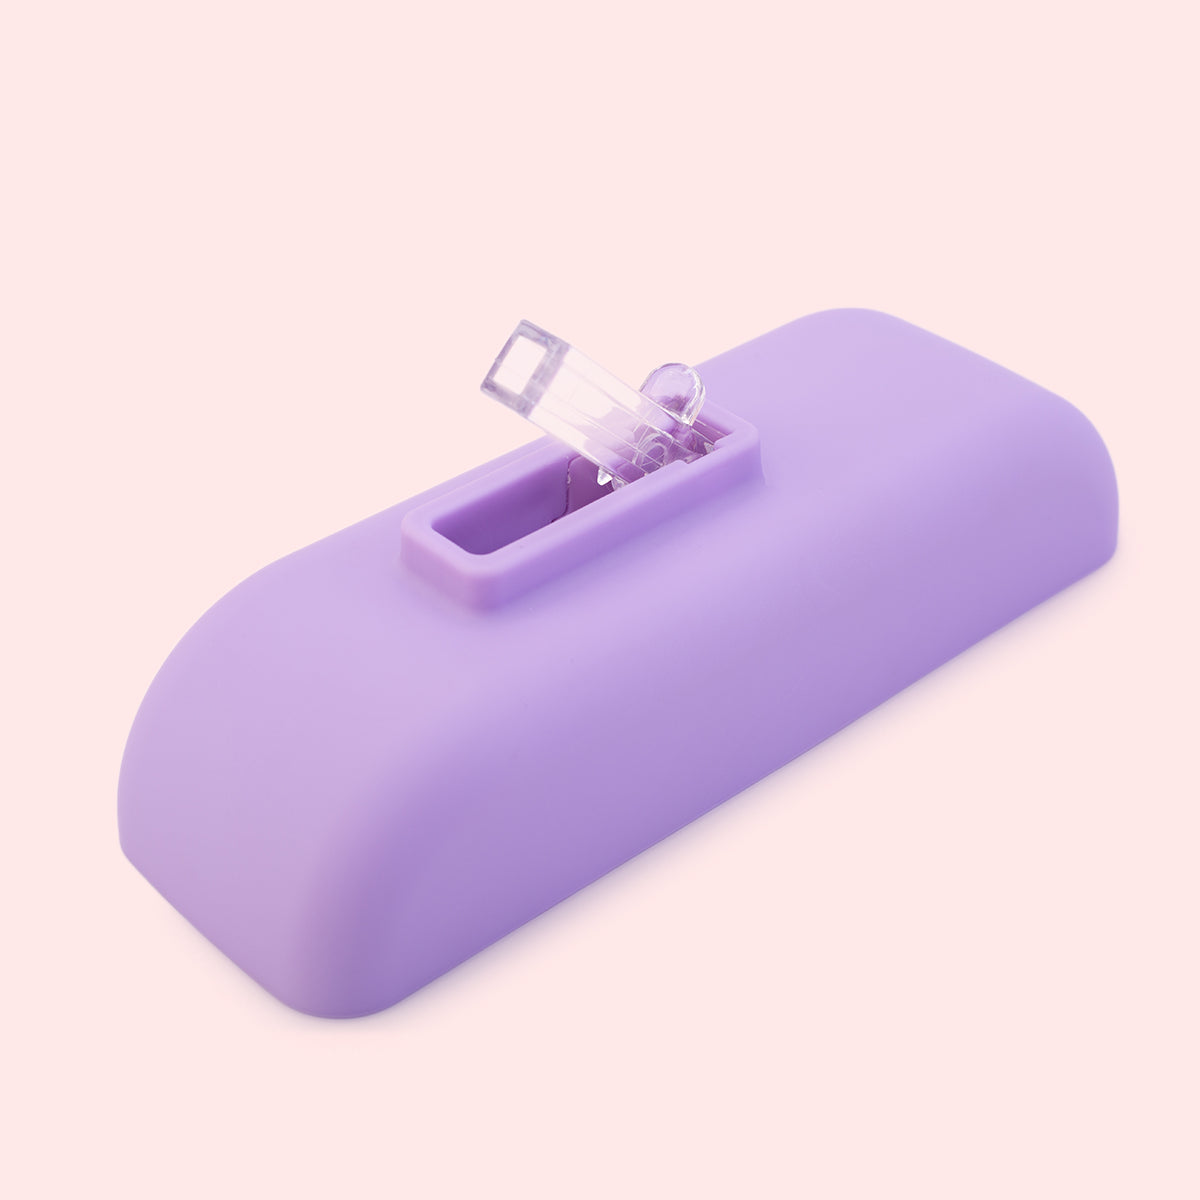 Cute Camera Shape Sipper Bottle - Purple